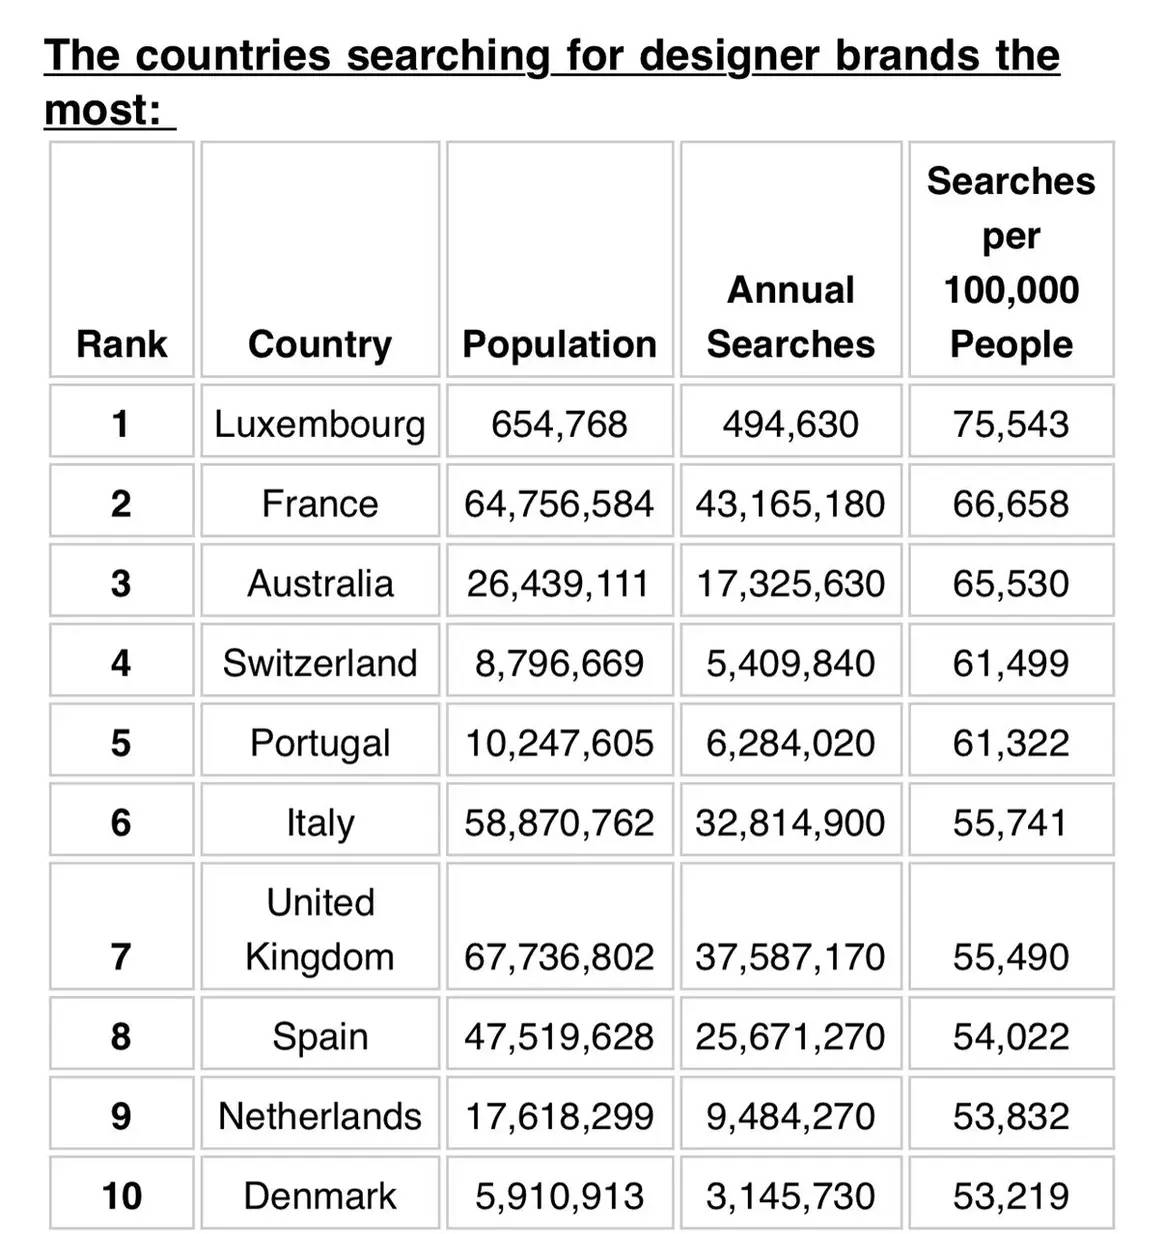 La top 10 dei Paesi che cercano di più i marchi di lusso